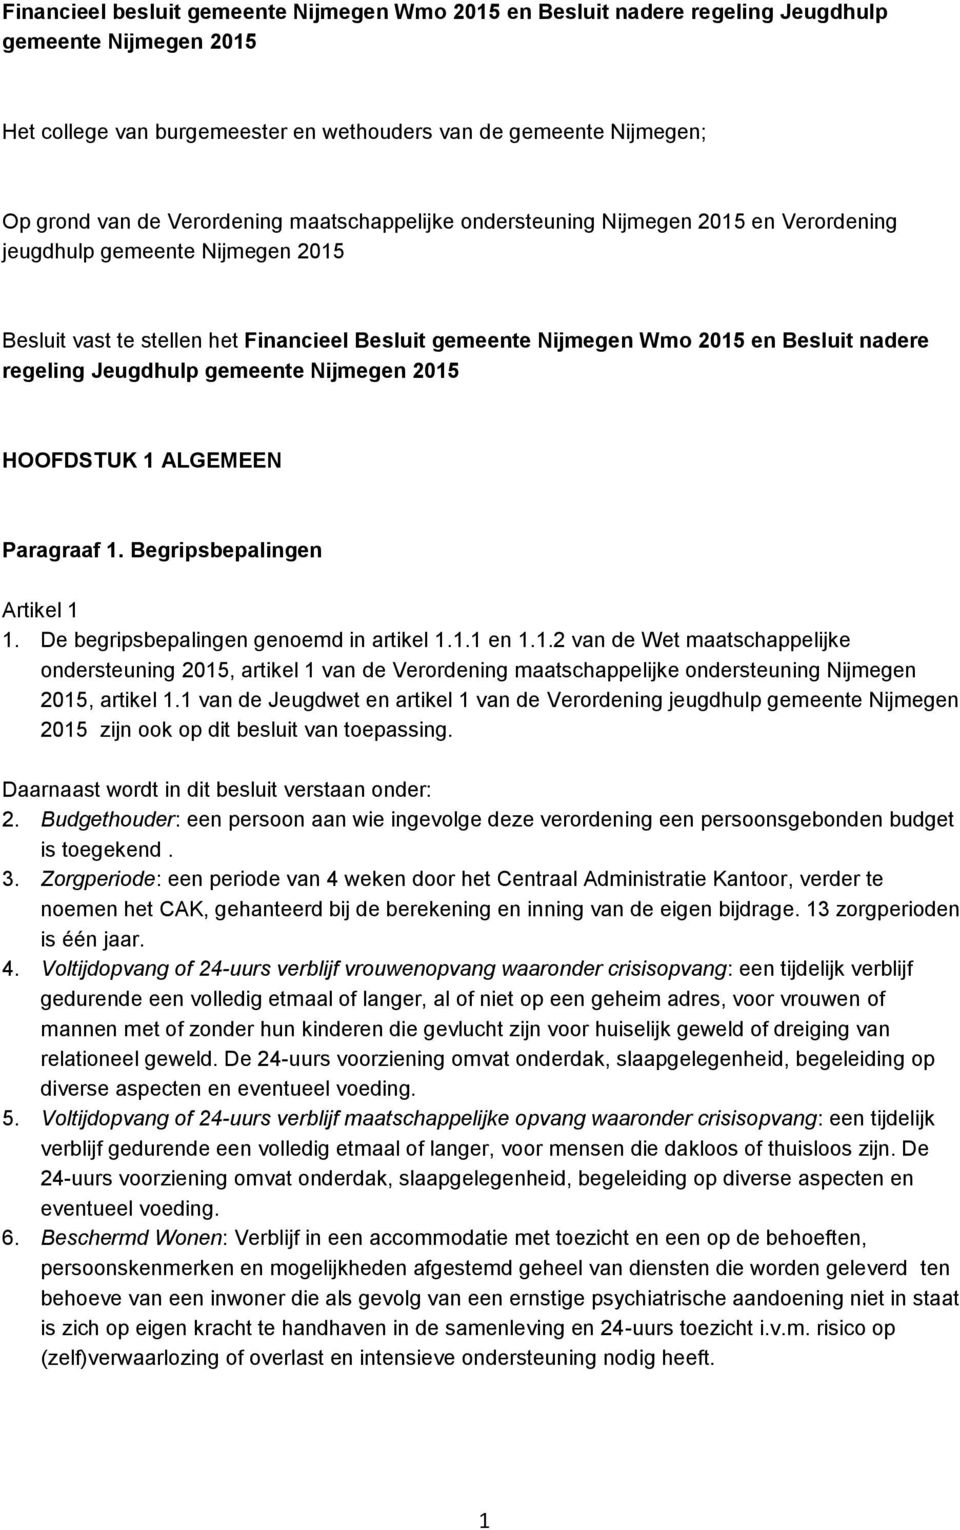 regeling Jeugdhulp gemeente Nijmegen 2015 HOOFDSTUK 1 ALGEMEEN Paragraaf 1. Begripsbepalingen Artikel 1 1. De begripsbepalingen genoemd in artikel 1.1.1 en 1.1.2 van de Wet maatschappelijke ondersteuning 2015, artikel 1 van de Verordening maatschappelijke ondersteuning Nijmegen 2015, artikel 1.